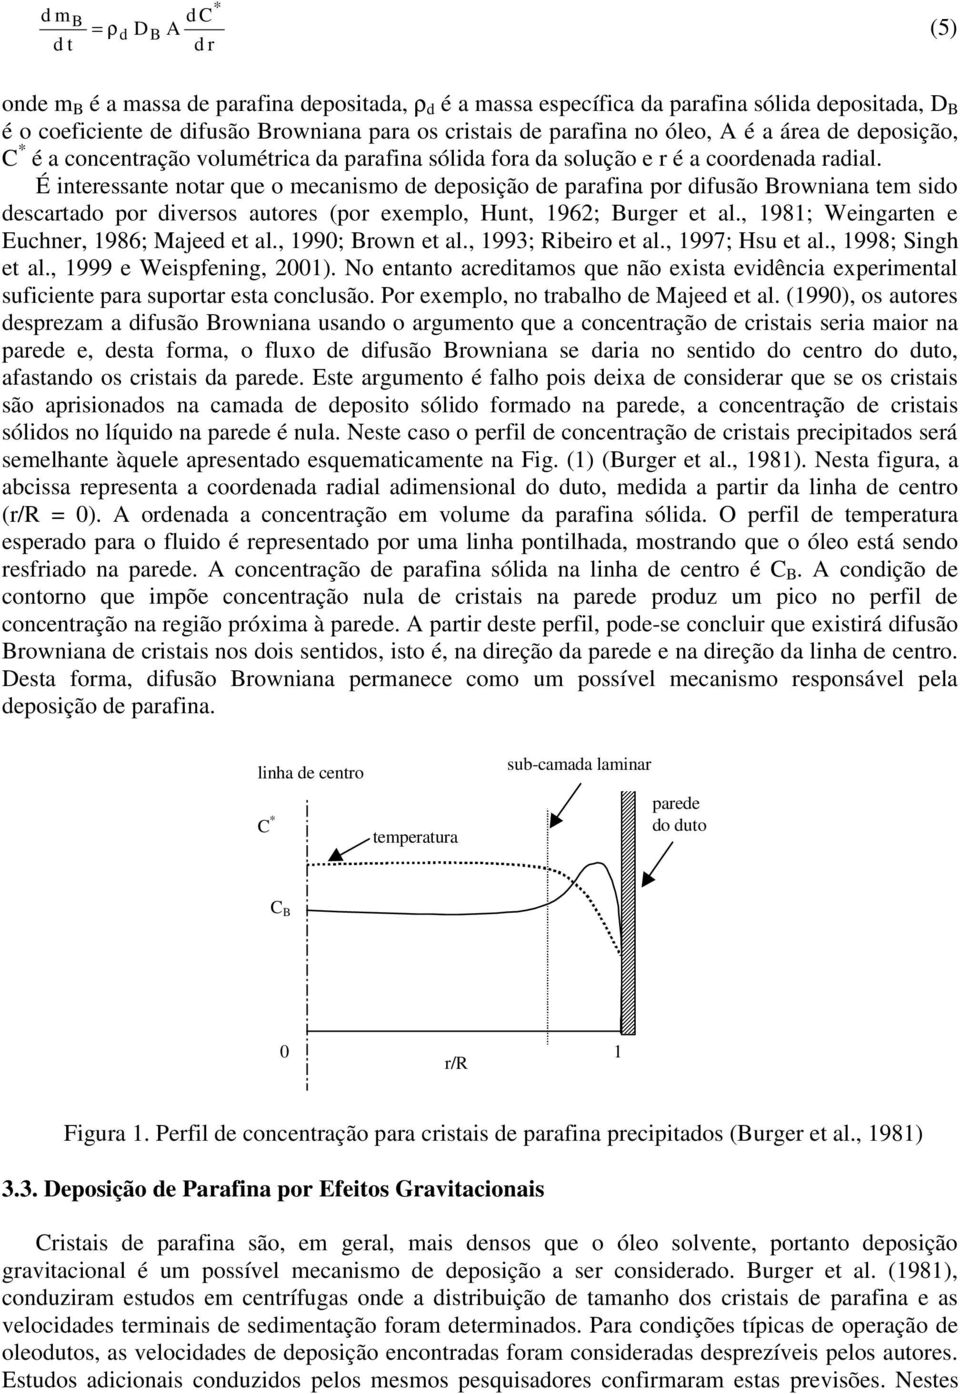 É interessante notar que o mecanismo de deposição de parafina por difusão Browniana tem sido descartado por diversos autores (por exemplo, Hunt, 1962; Burger et al.